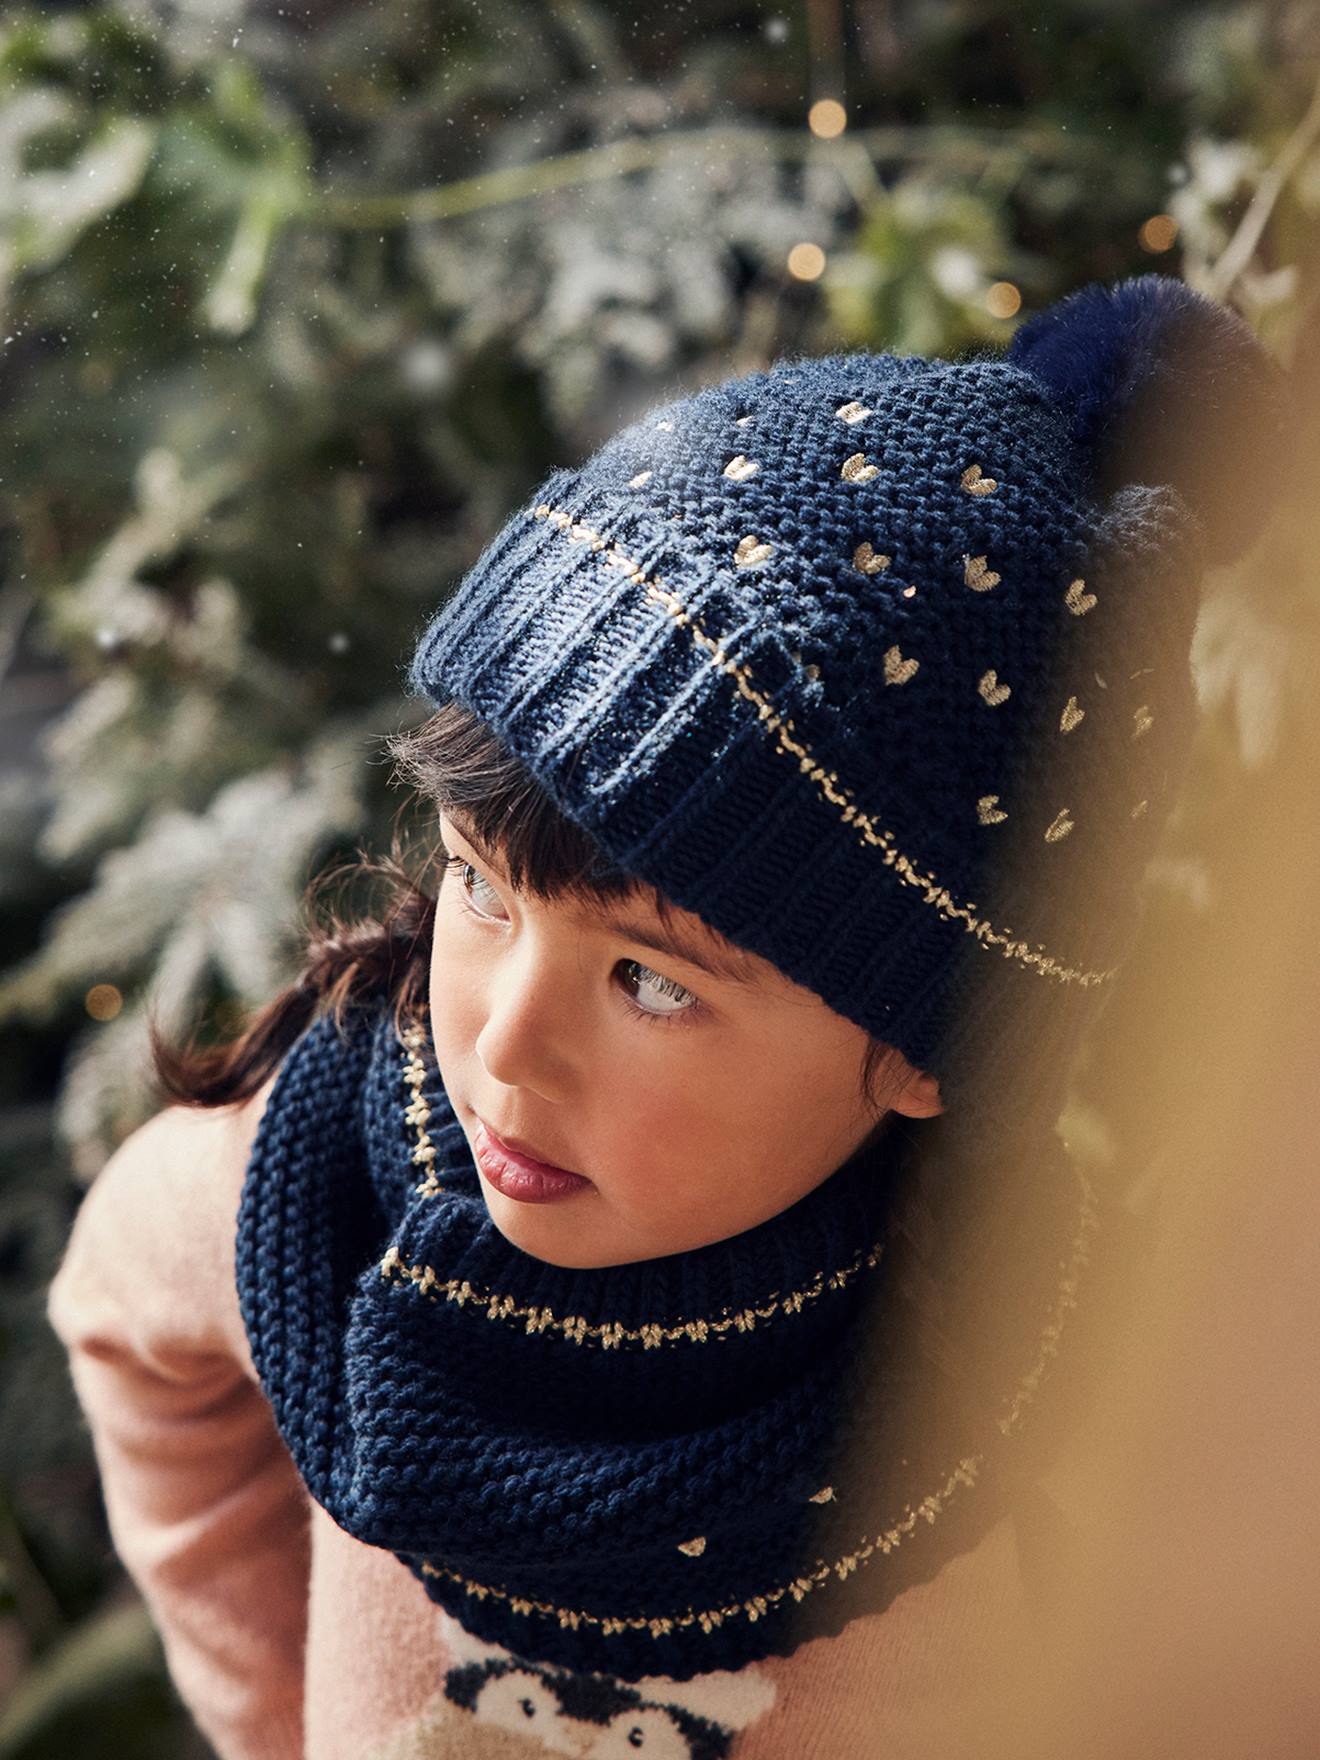 Bonnet fille d'hiver en tricot pour enfant de 0 à 2 ans • Petites